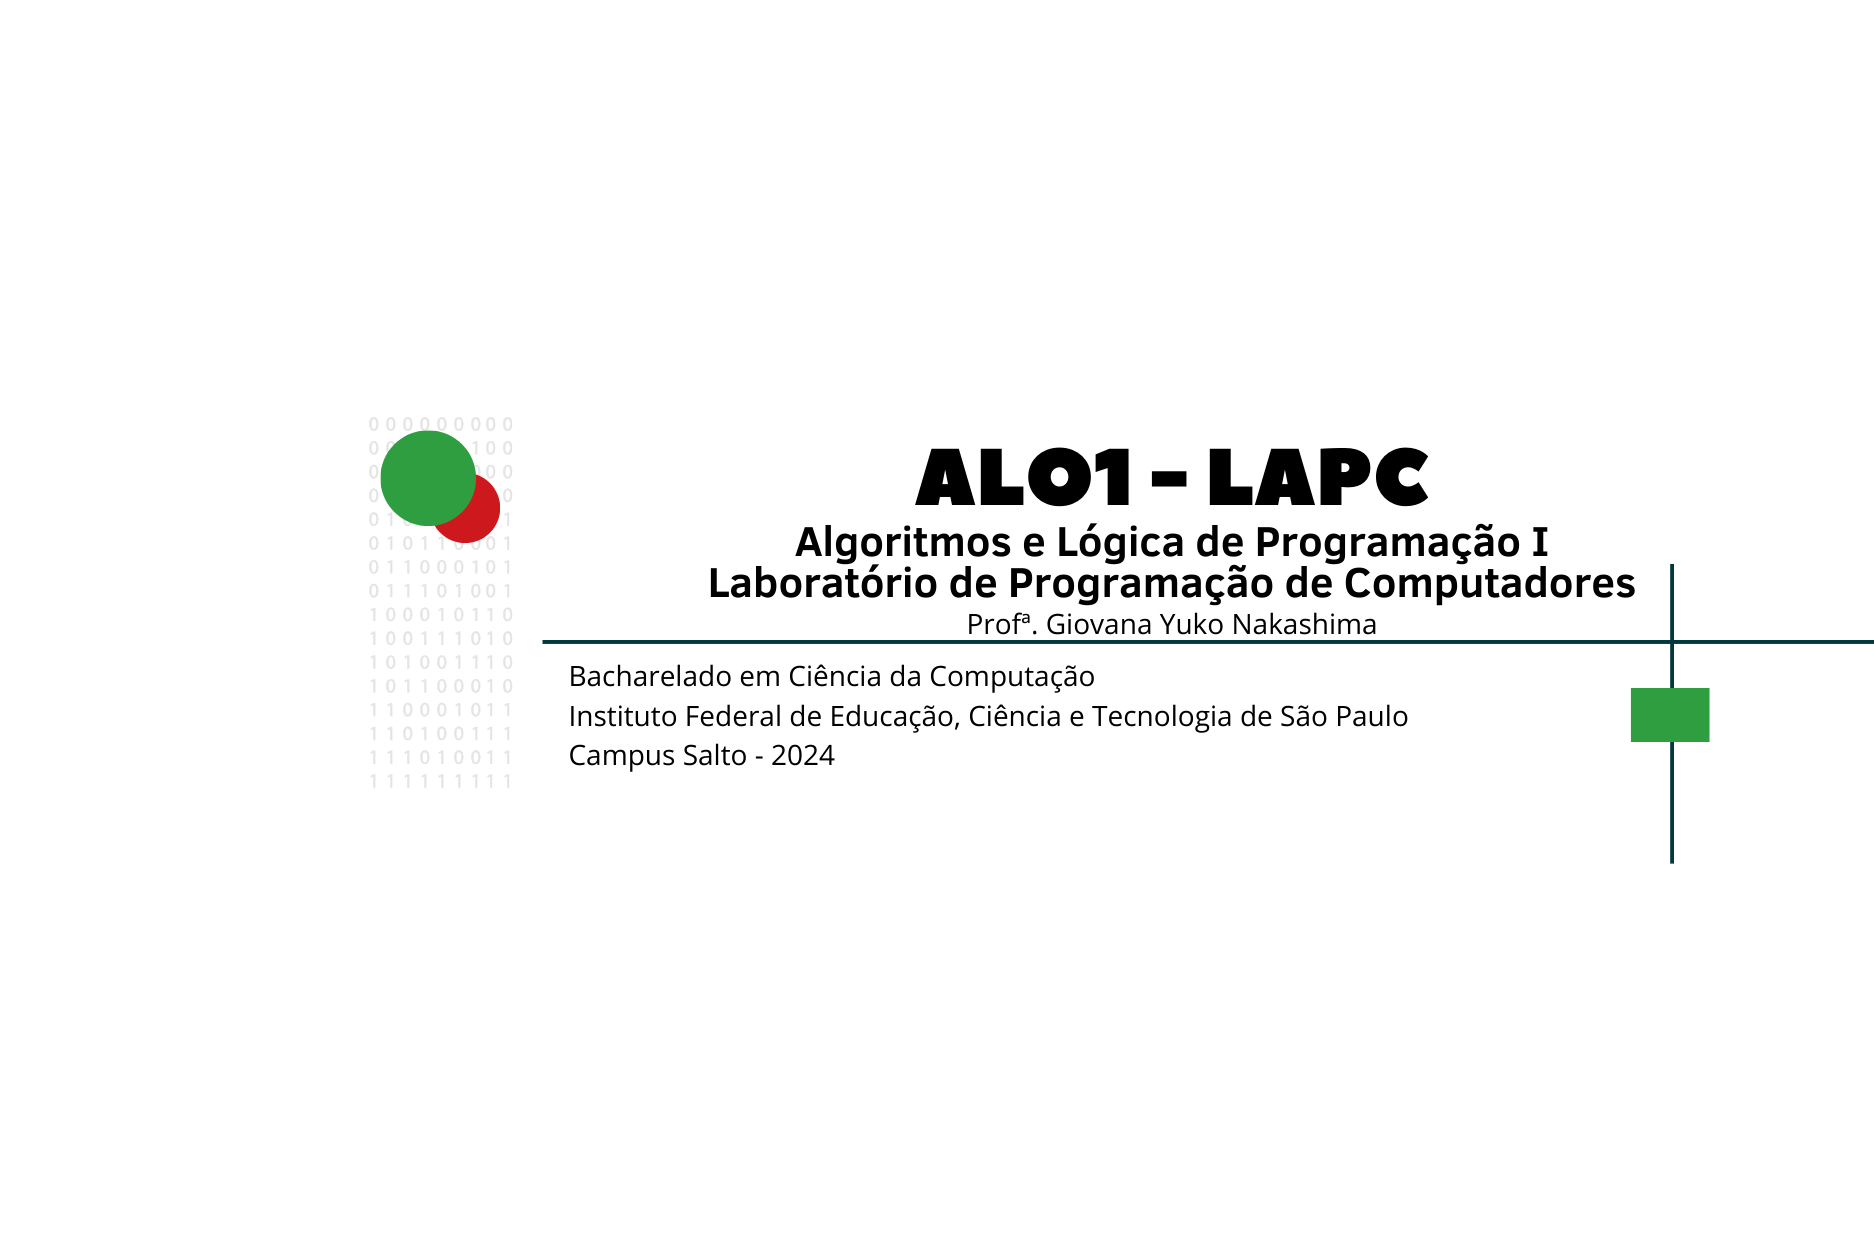 ALO1 - LAPC - Algoritmos e Lógica de Programação I - Laboratório de Programação de Computadores - BCC - 2024 - Profª Giovana